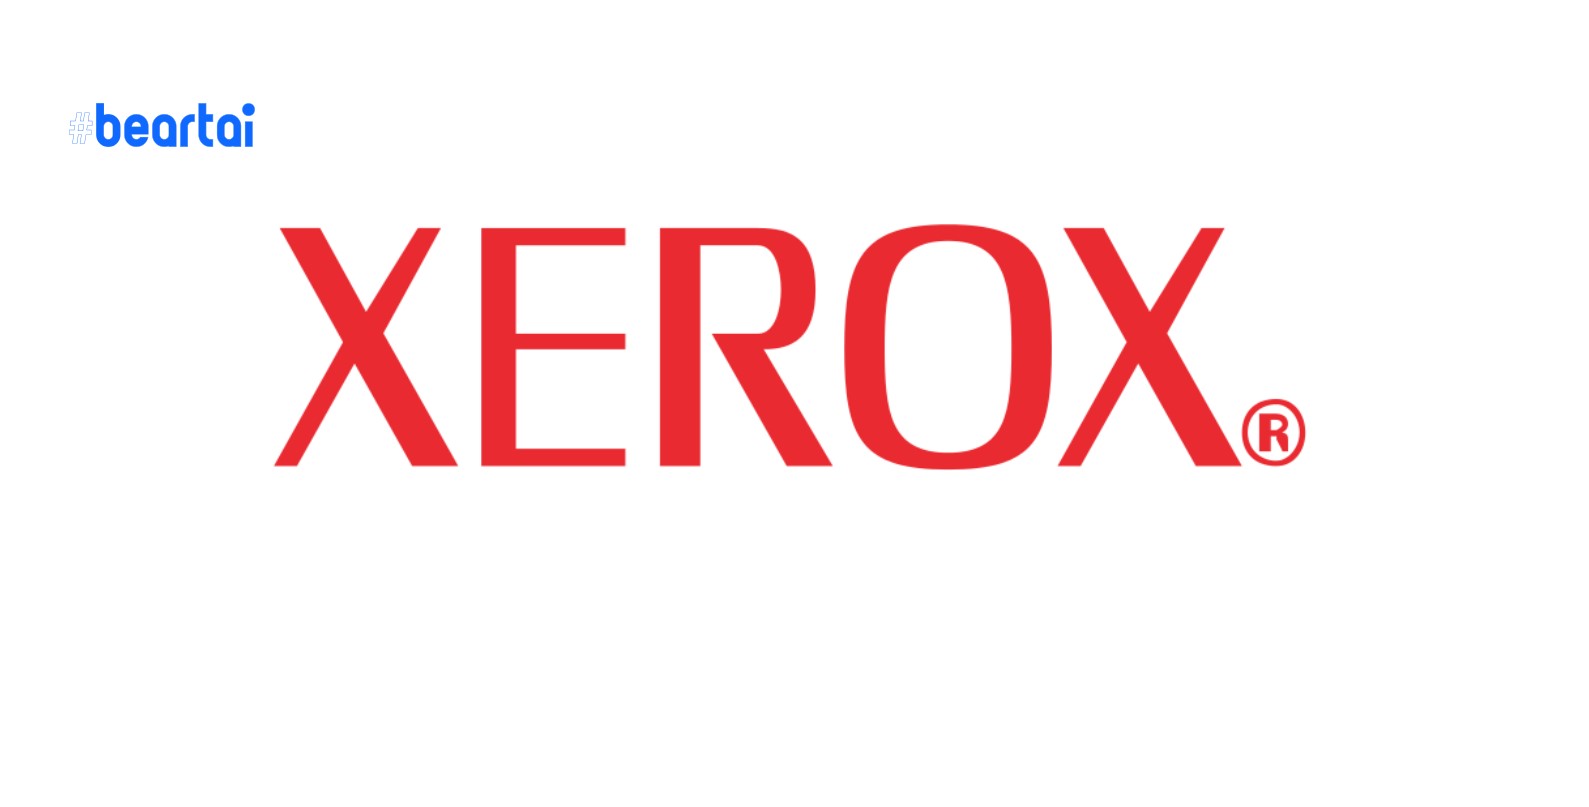 ไม่สน! HP ปฏิเสธการขอซื้อบริษัทจาก Xerox ด้วยข้อเสนอมูลค่า 3.5 หมื่นล้านเหรียญสหรัฐฯ